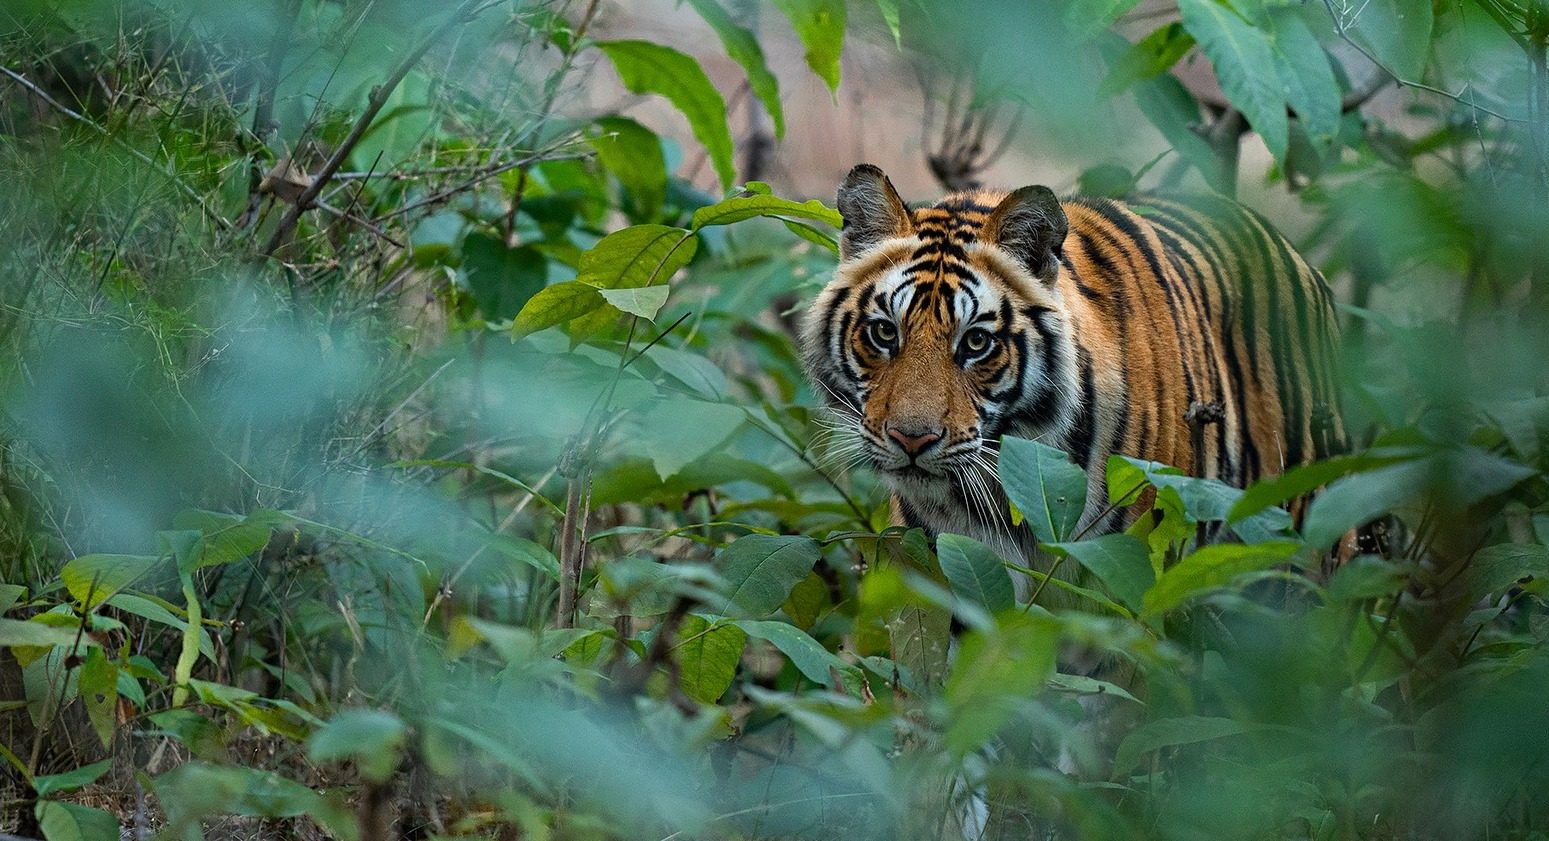 Tiger seizures up in parts of Asia despite conservation efforts